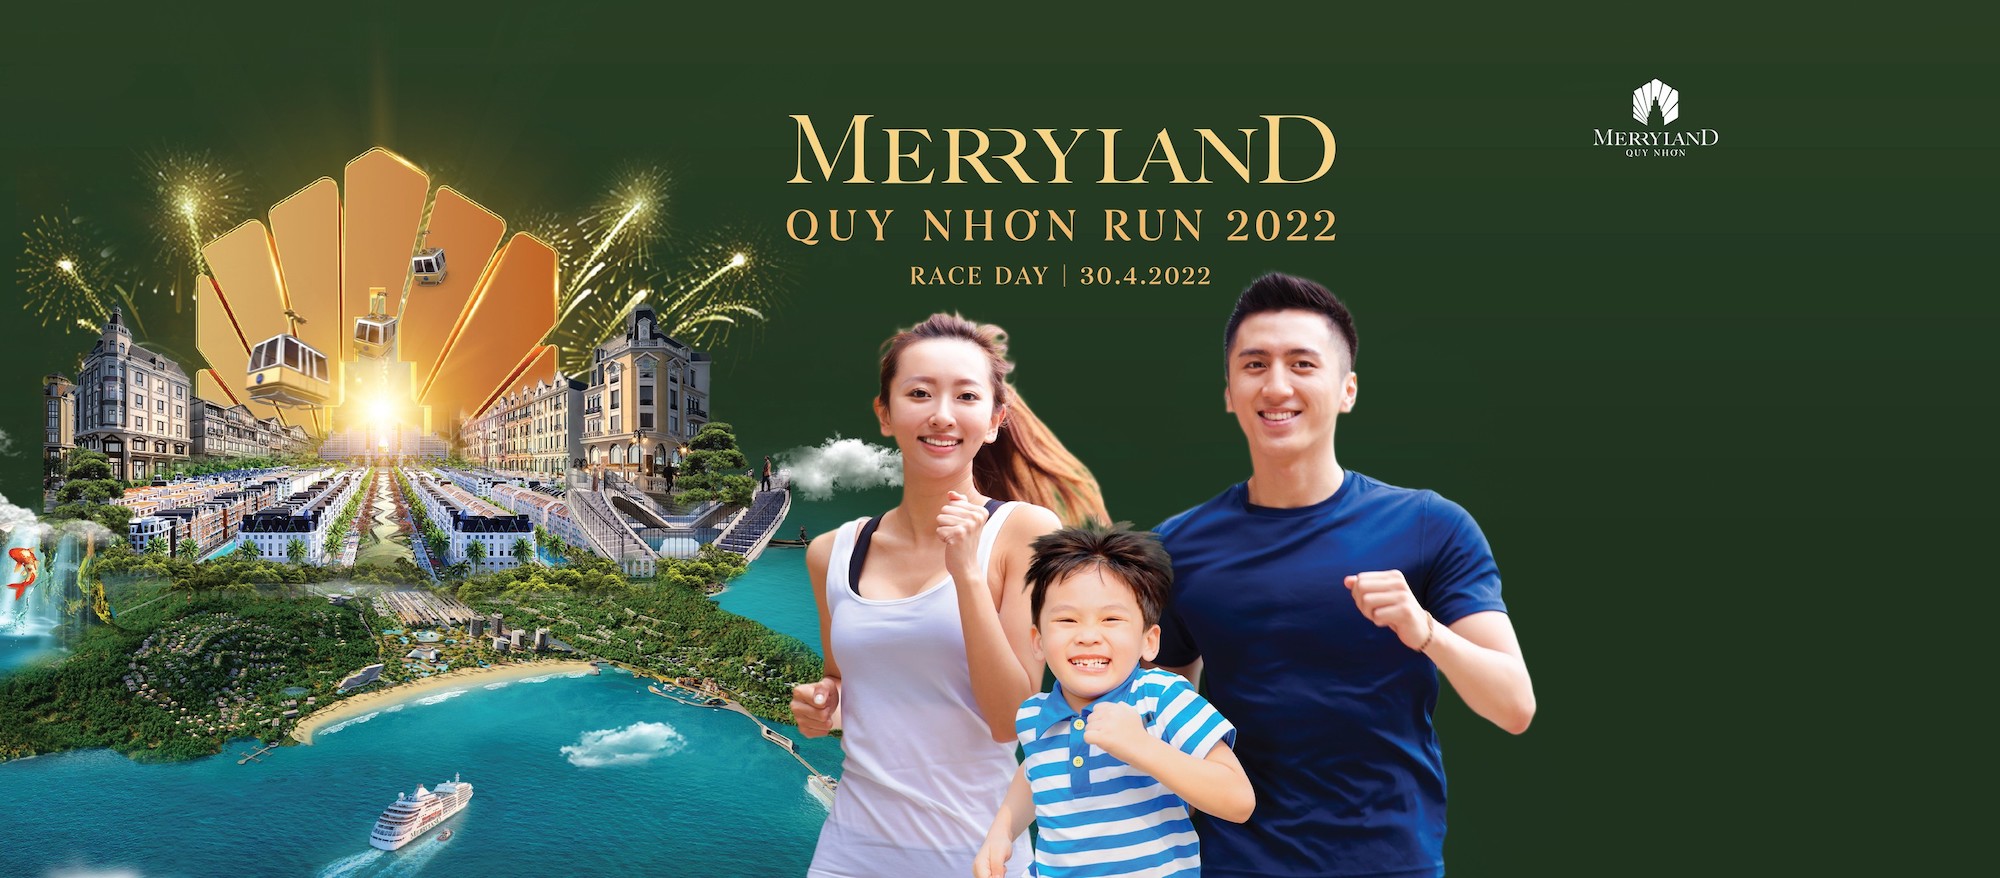 MerryLand Quy Nhơn Run 2022 - merryland quy nhon run 2022